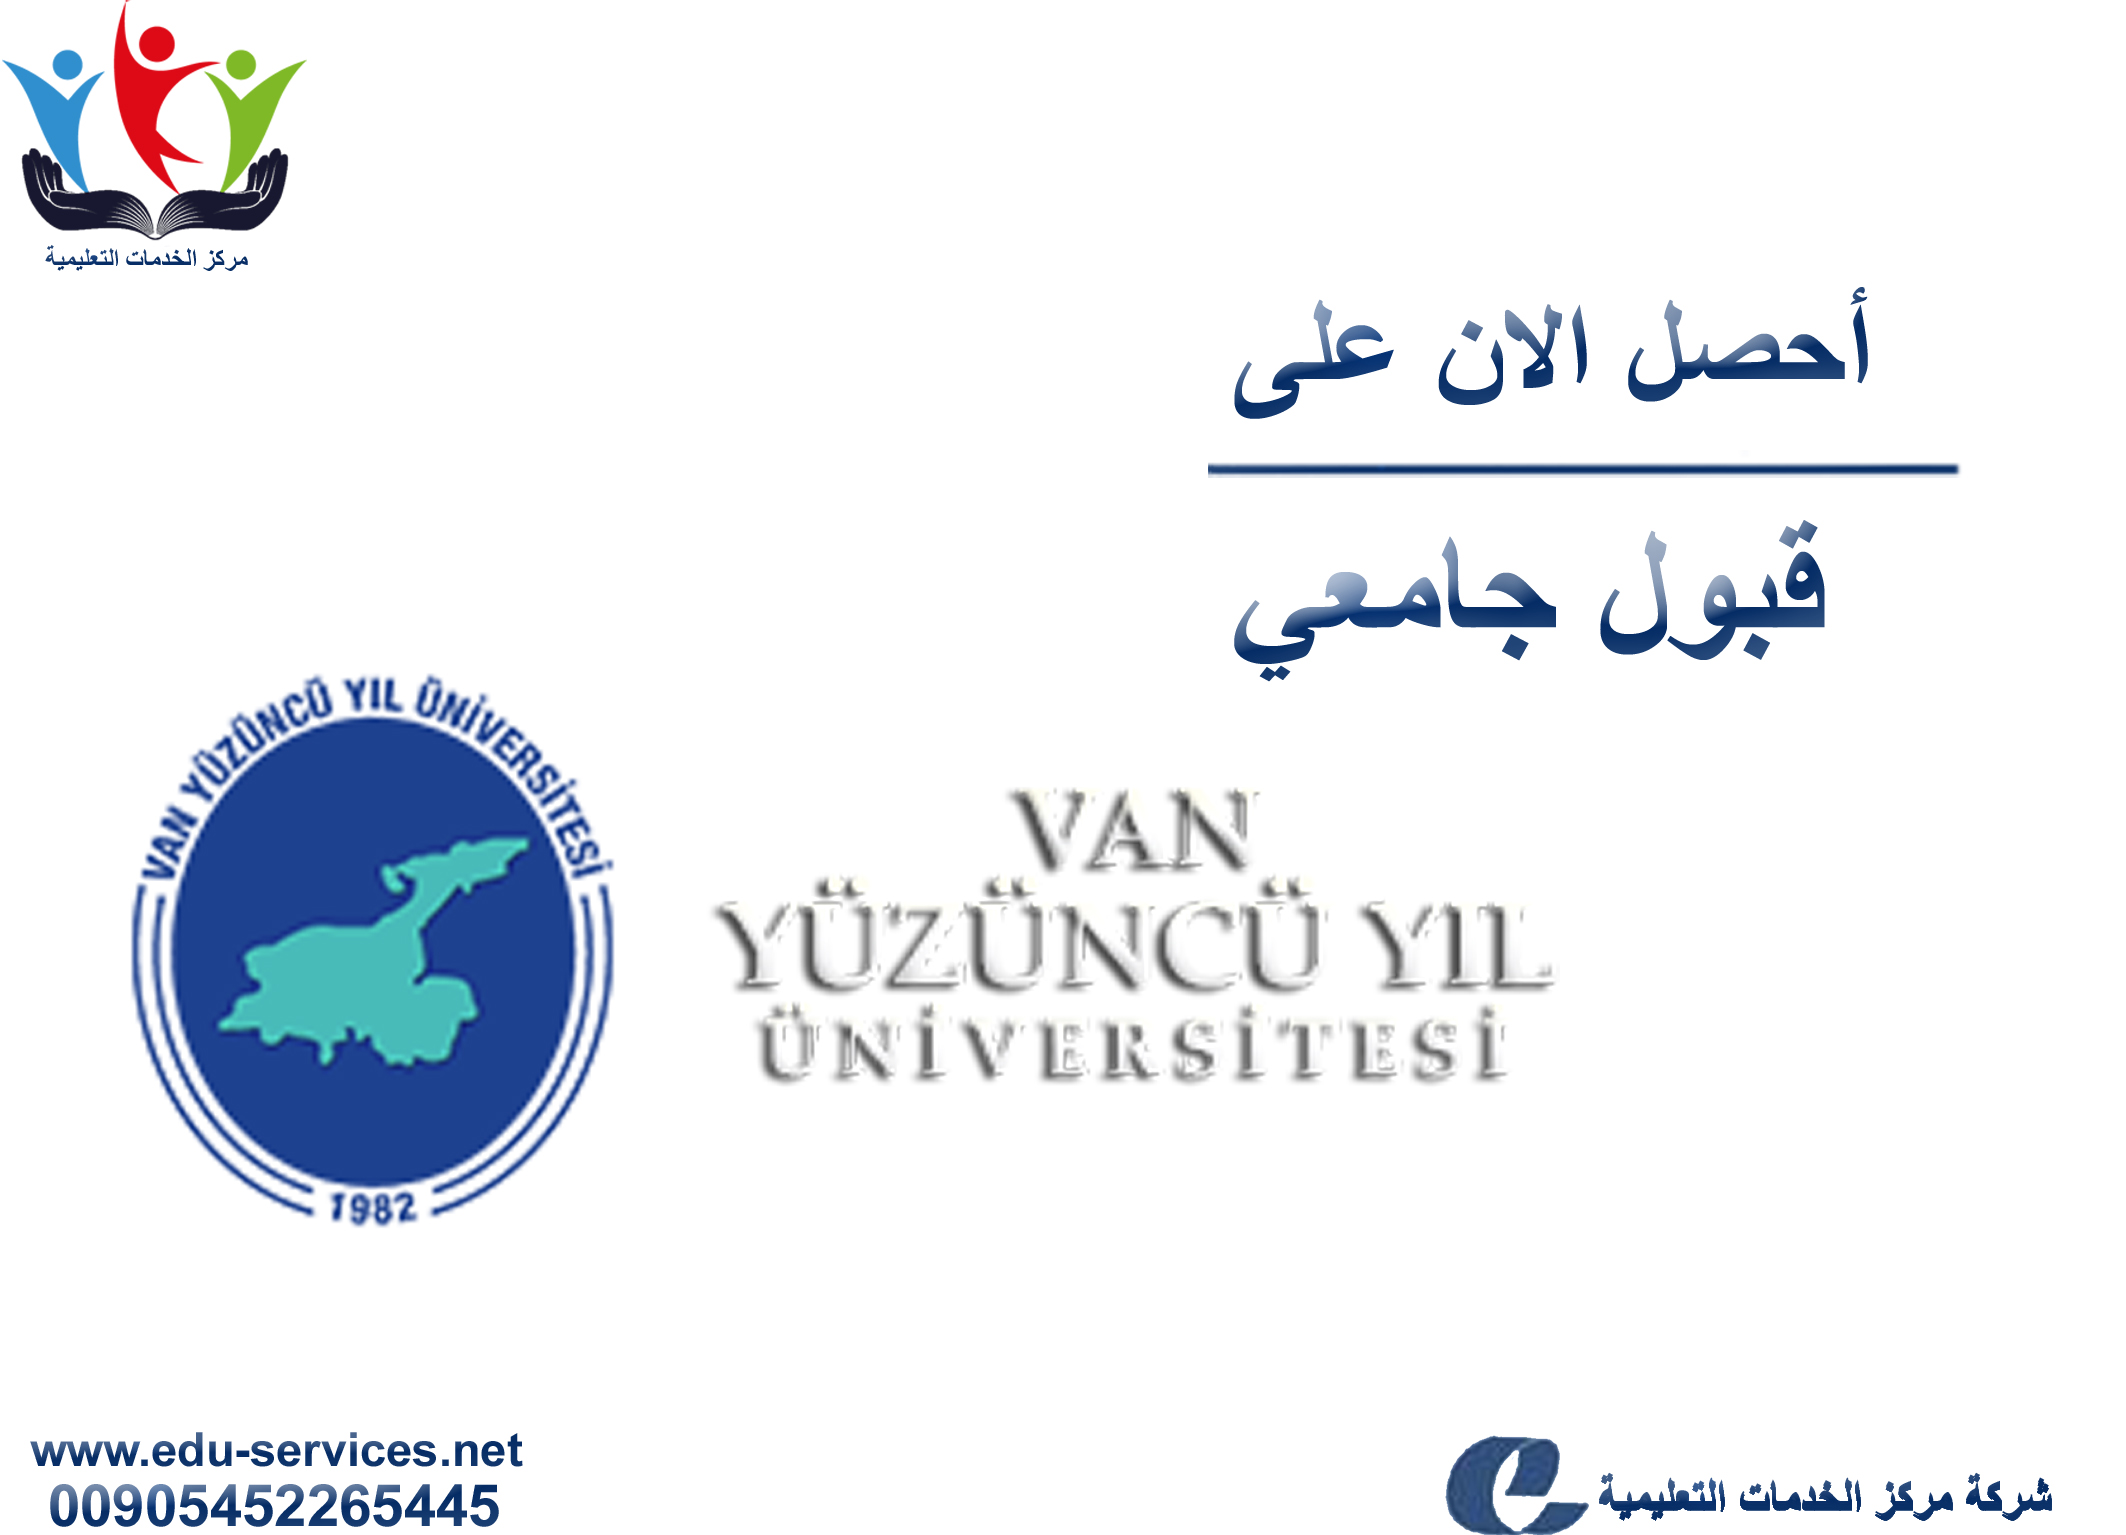 افتتاح التسجيل في جامعة يوزونجويل للعام 2018-2019